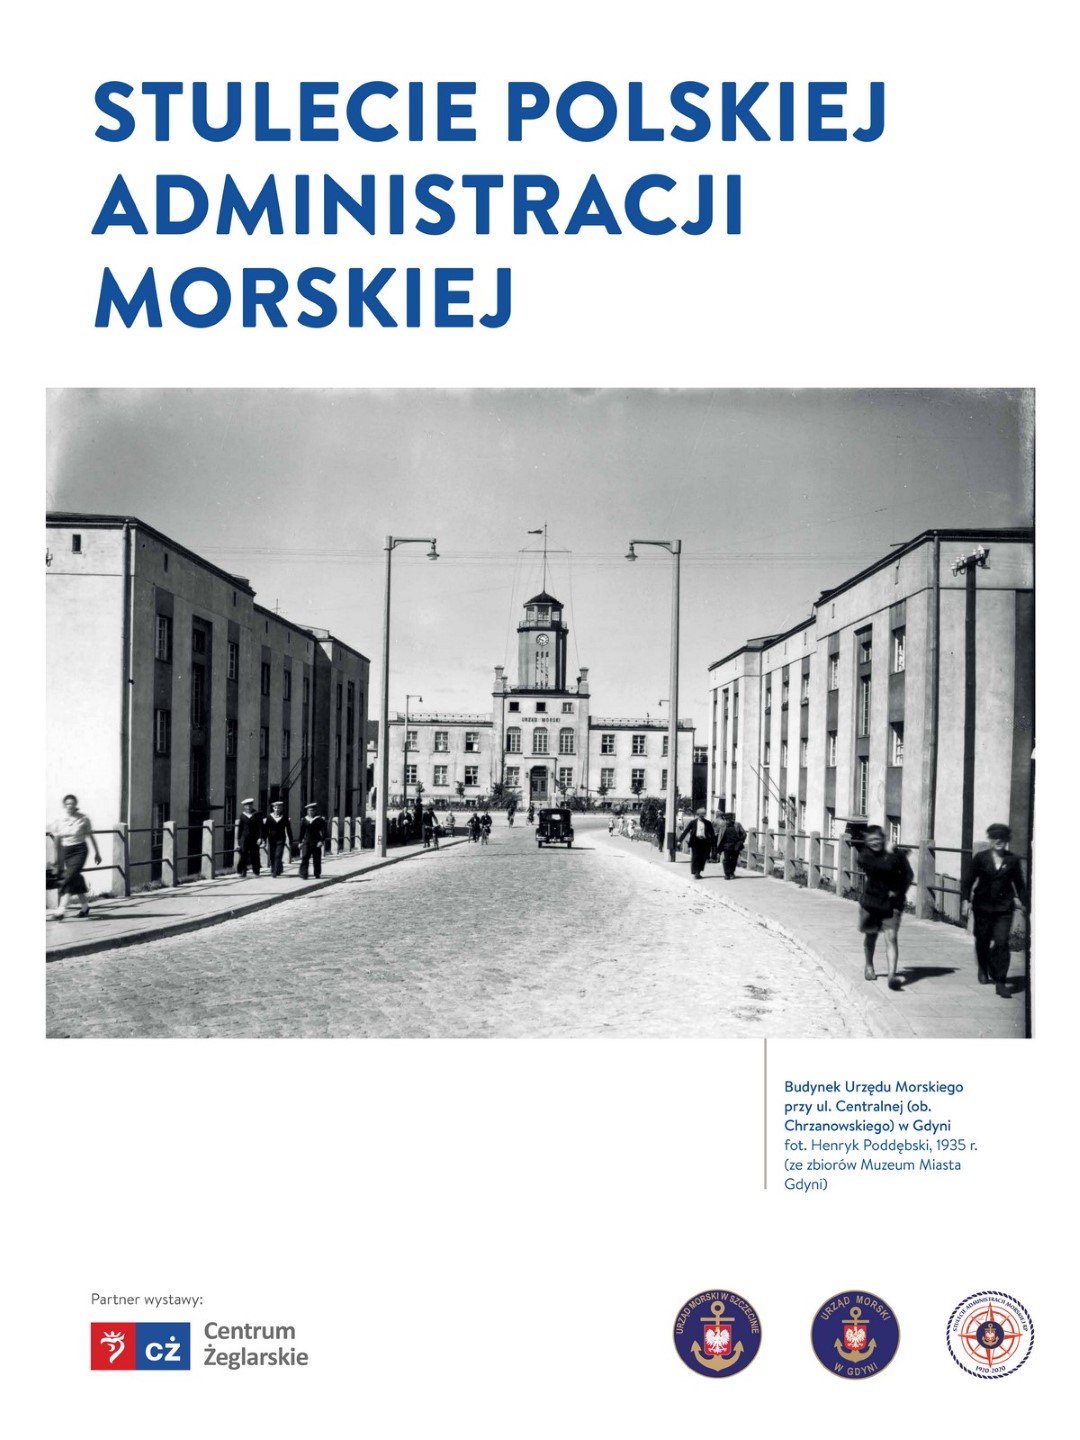 Wystawa „100-lecie Polskiej Administracji Morskiej